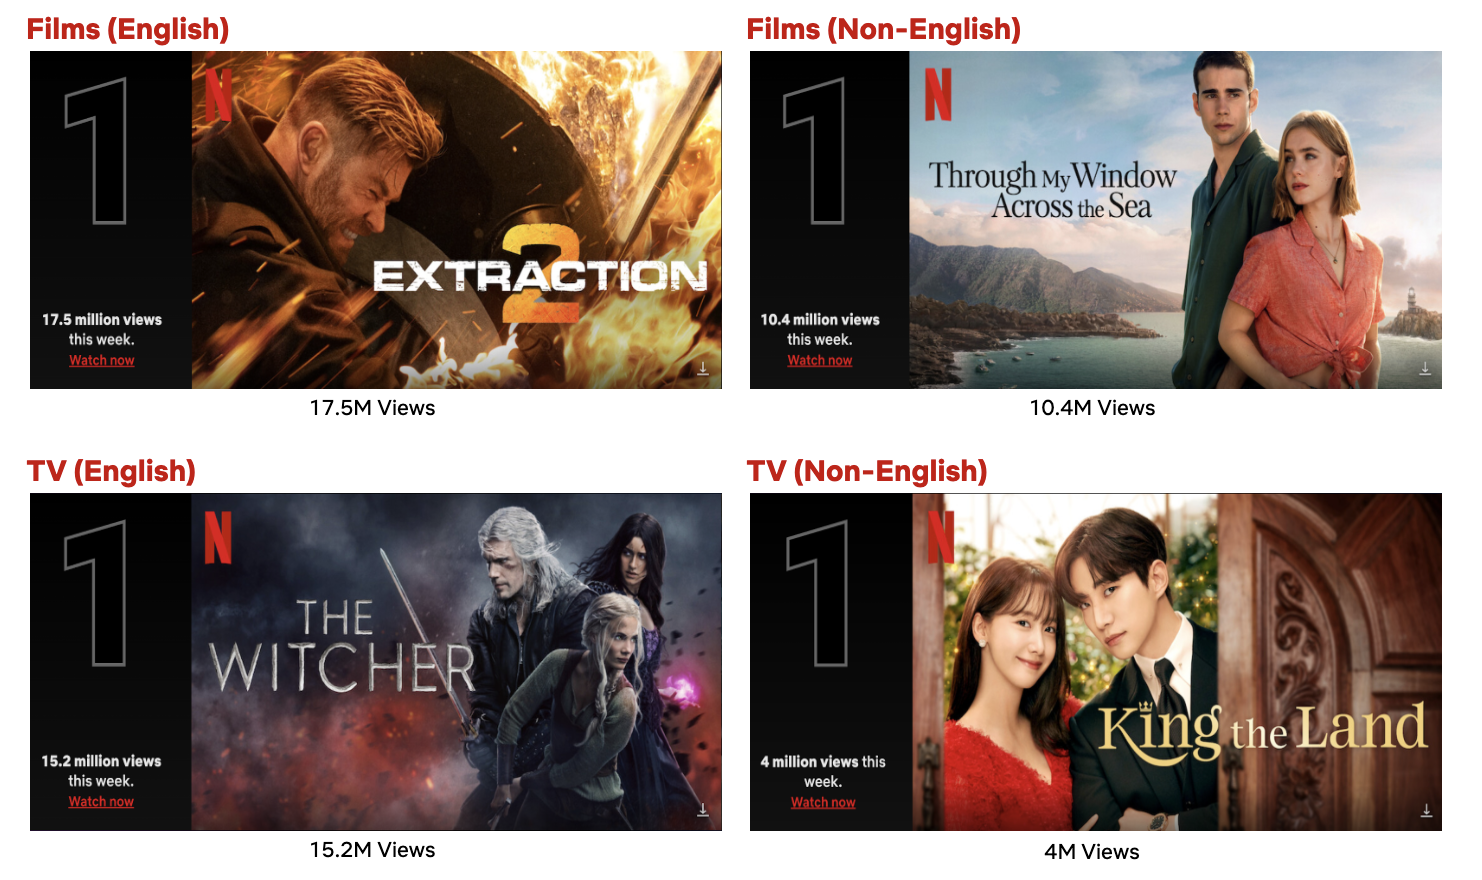 TOP 10 TV SERIES TO WATCH IN NETFLIX